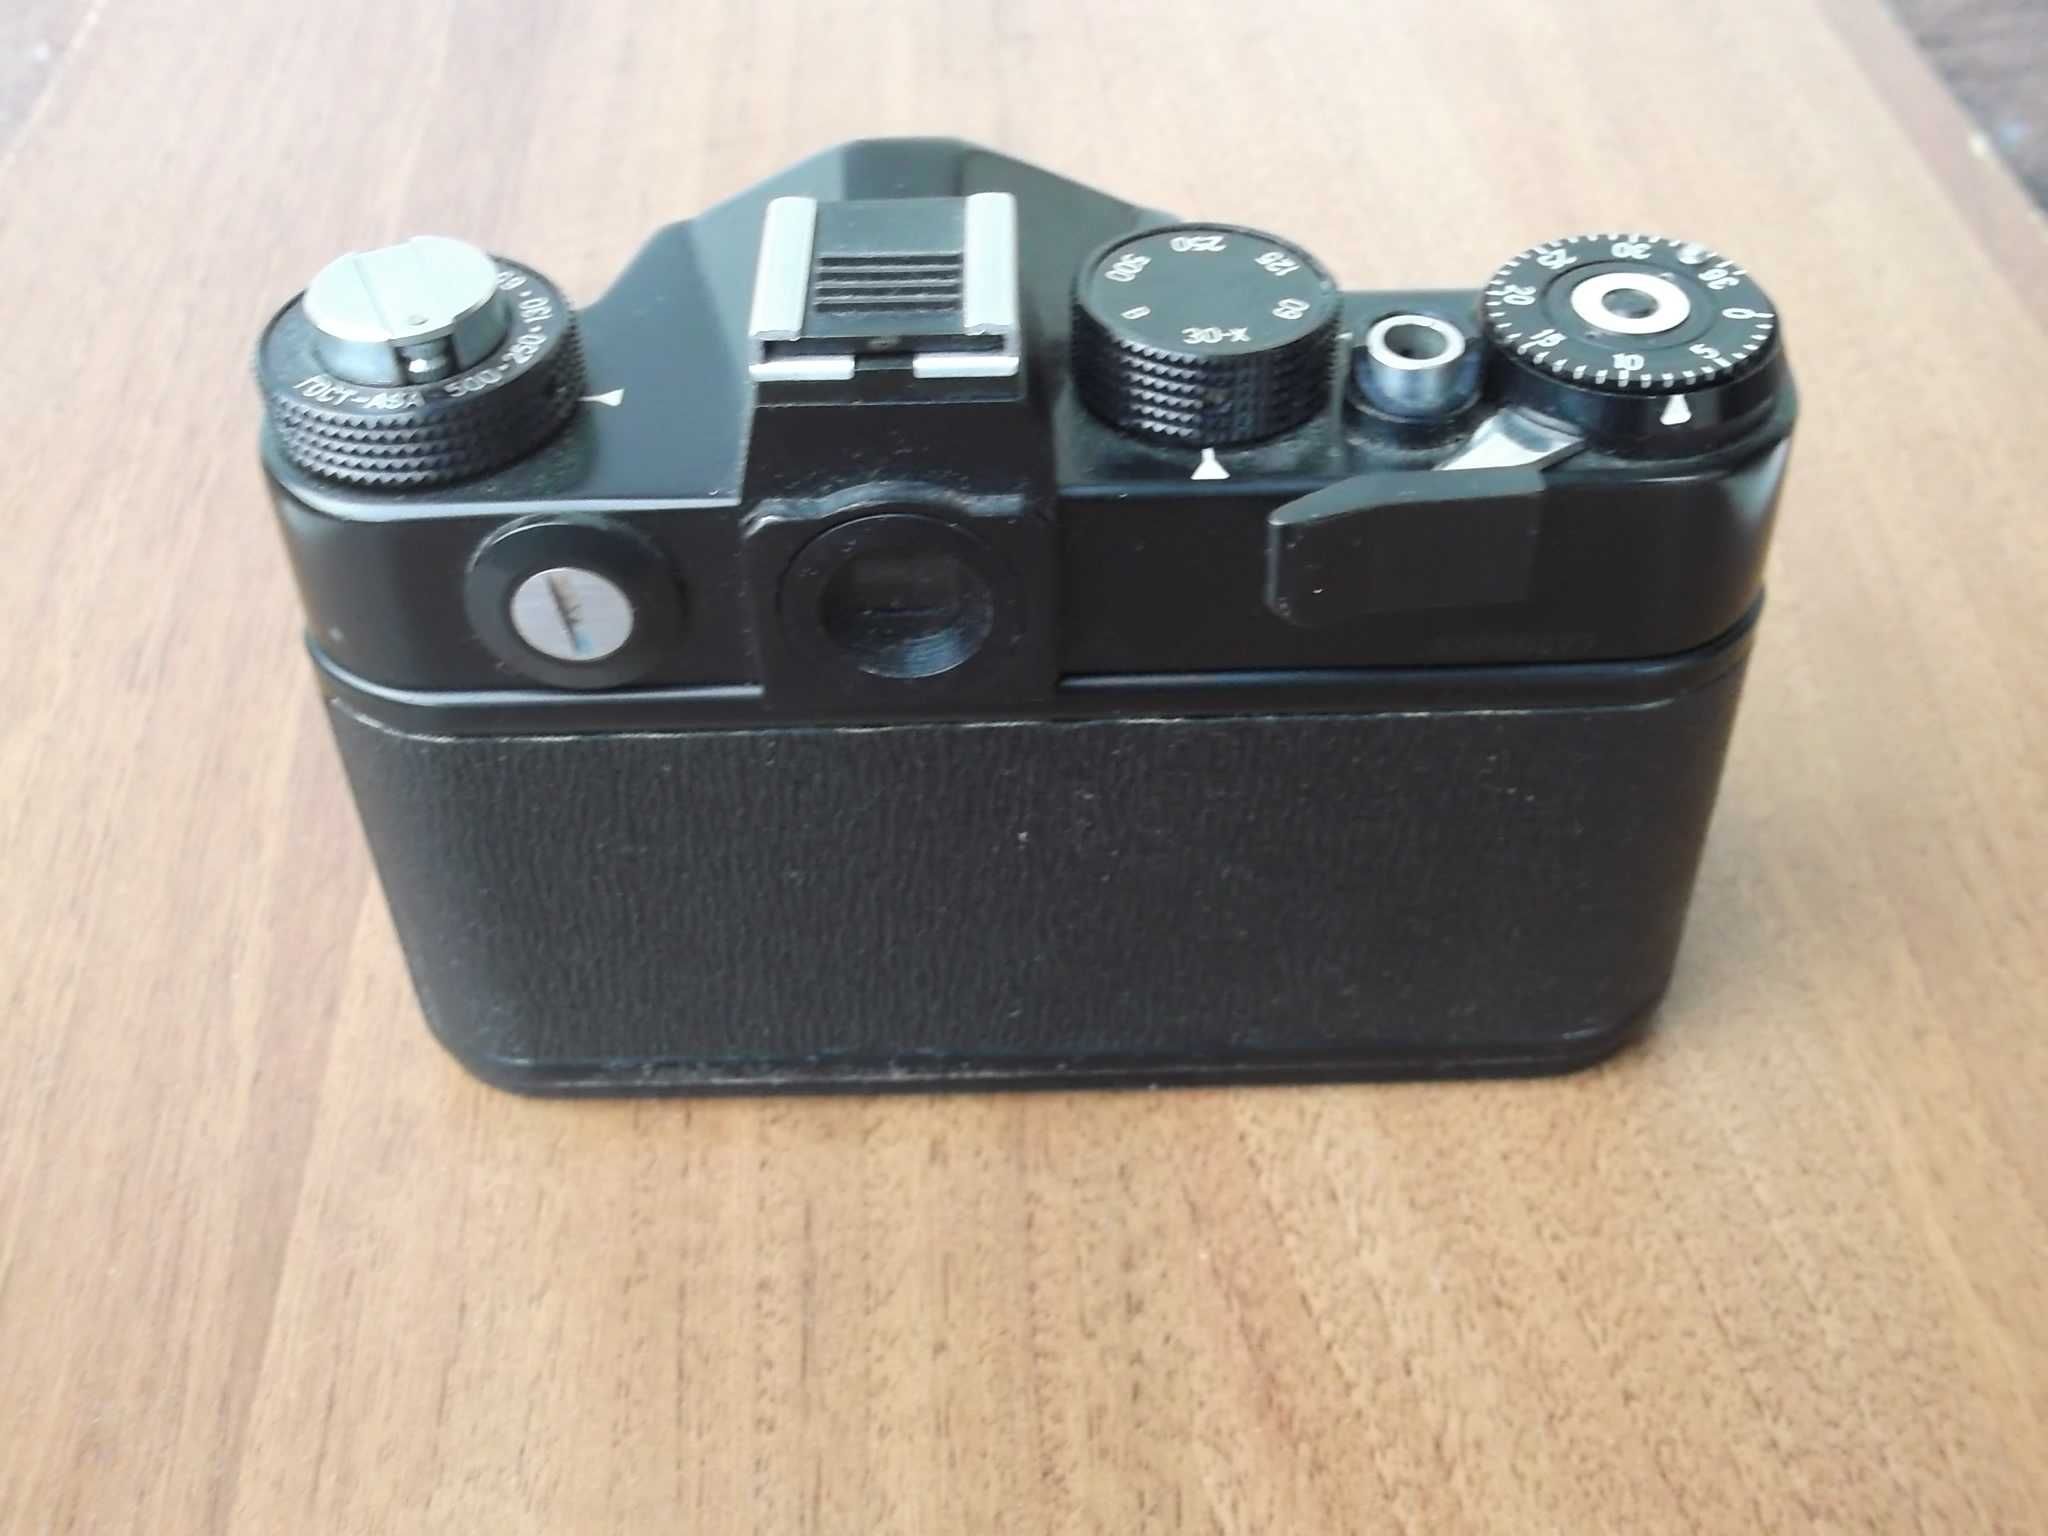 Фотоаппарат Зенит 12сд с футляром, без объектива, рабочий.